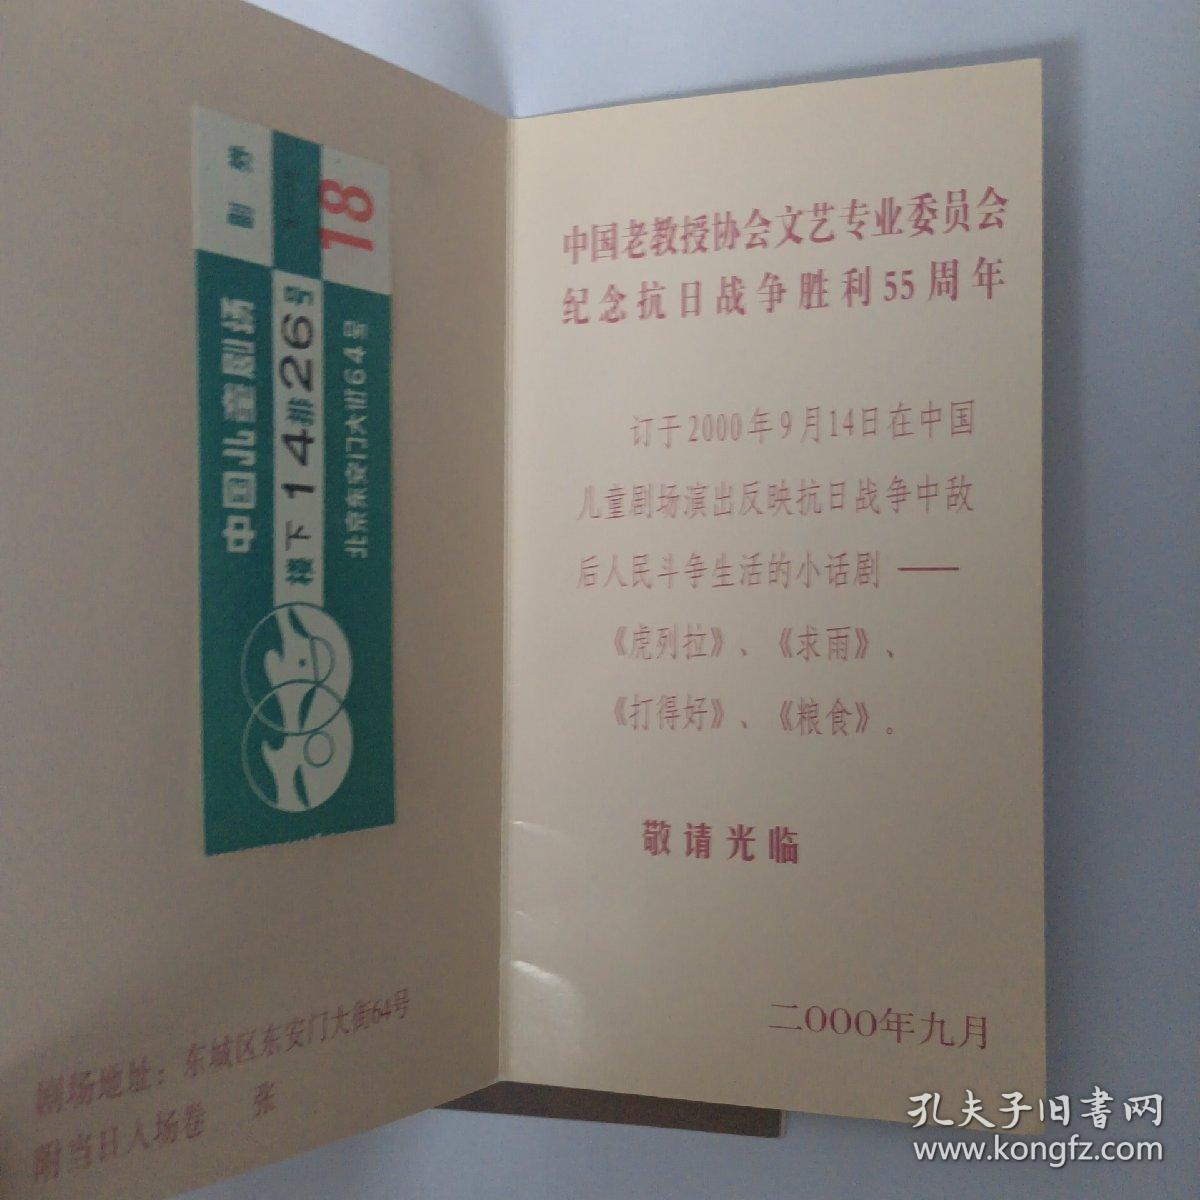 2000年9月14日 中国老教授协会文艺专业委员会纪念抗日战争胜利55周年请柬 入场券2枚